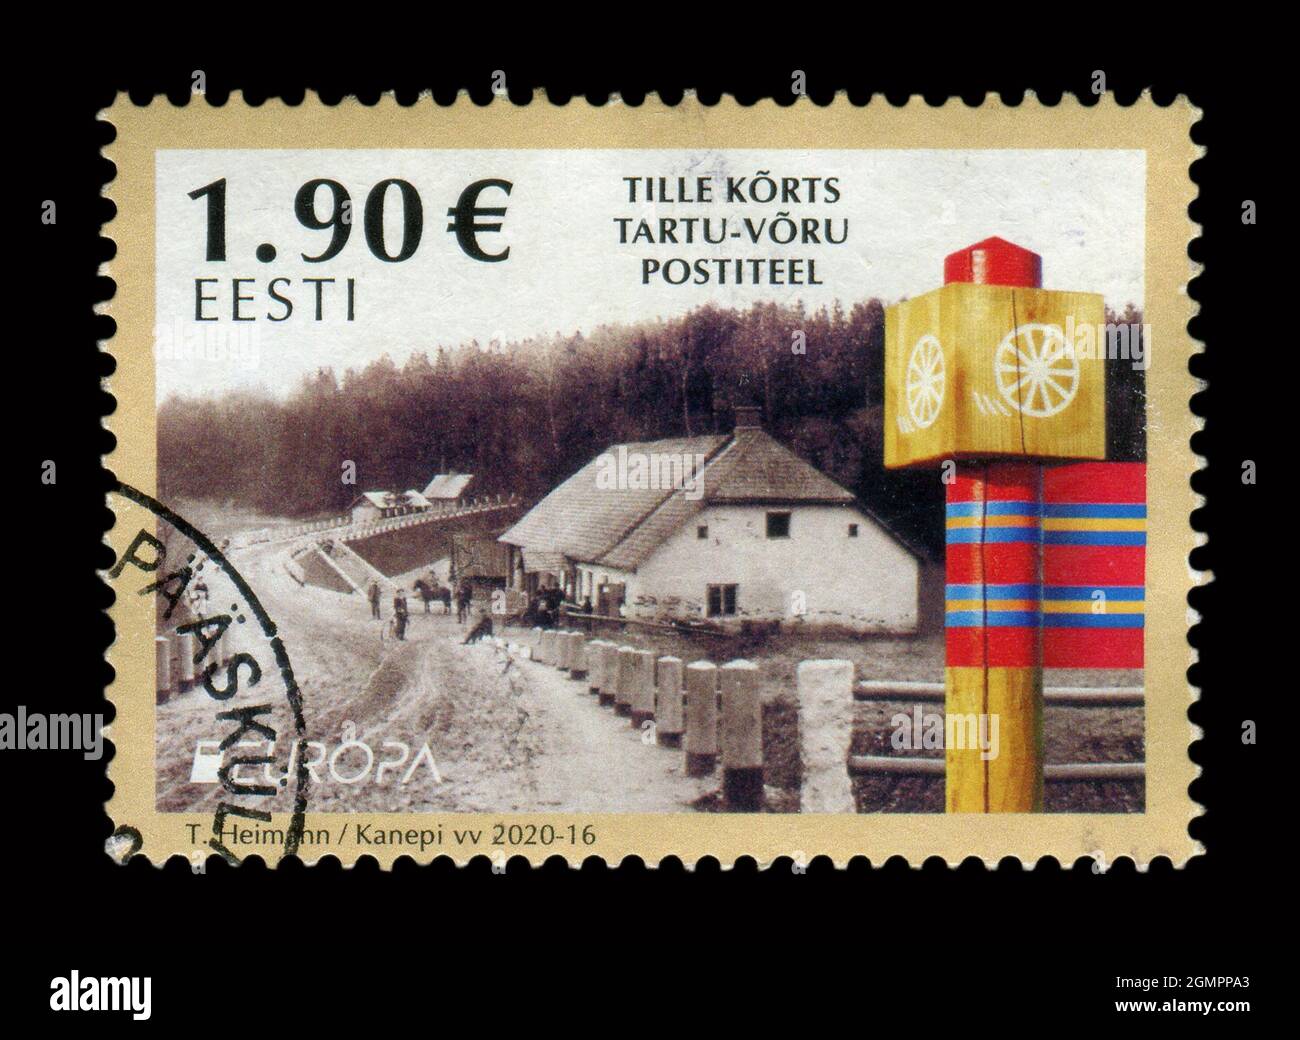 Le timbre imprimé en Estonie montre l'image de la Tille Korts Tartu-Voru Postiueel, vers 2020. Banque D'Images